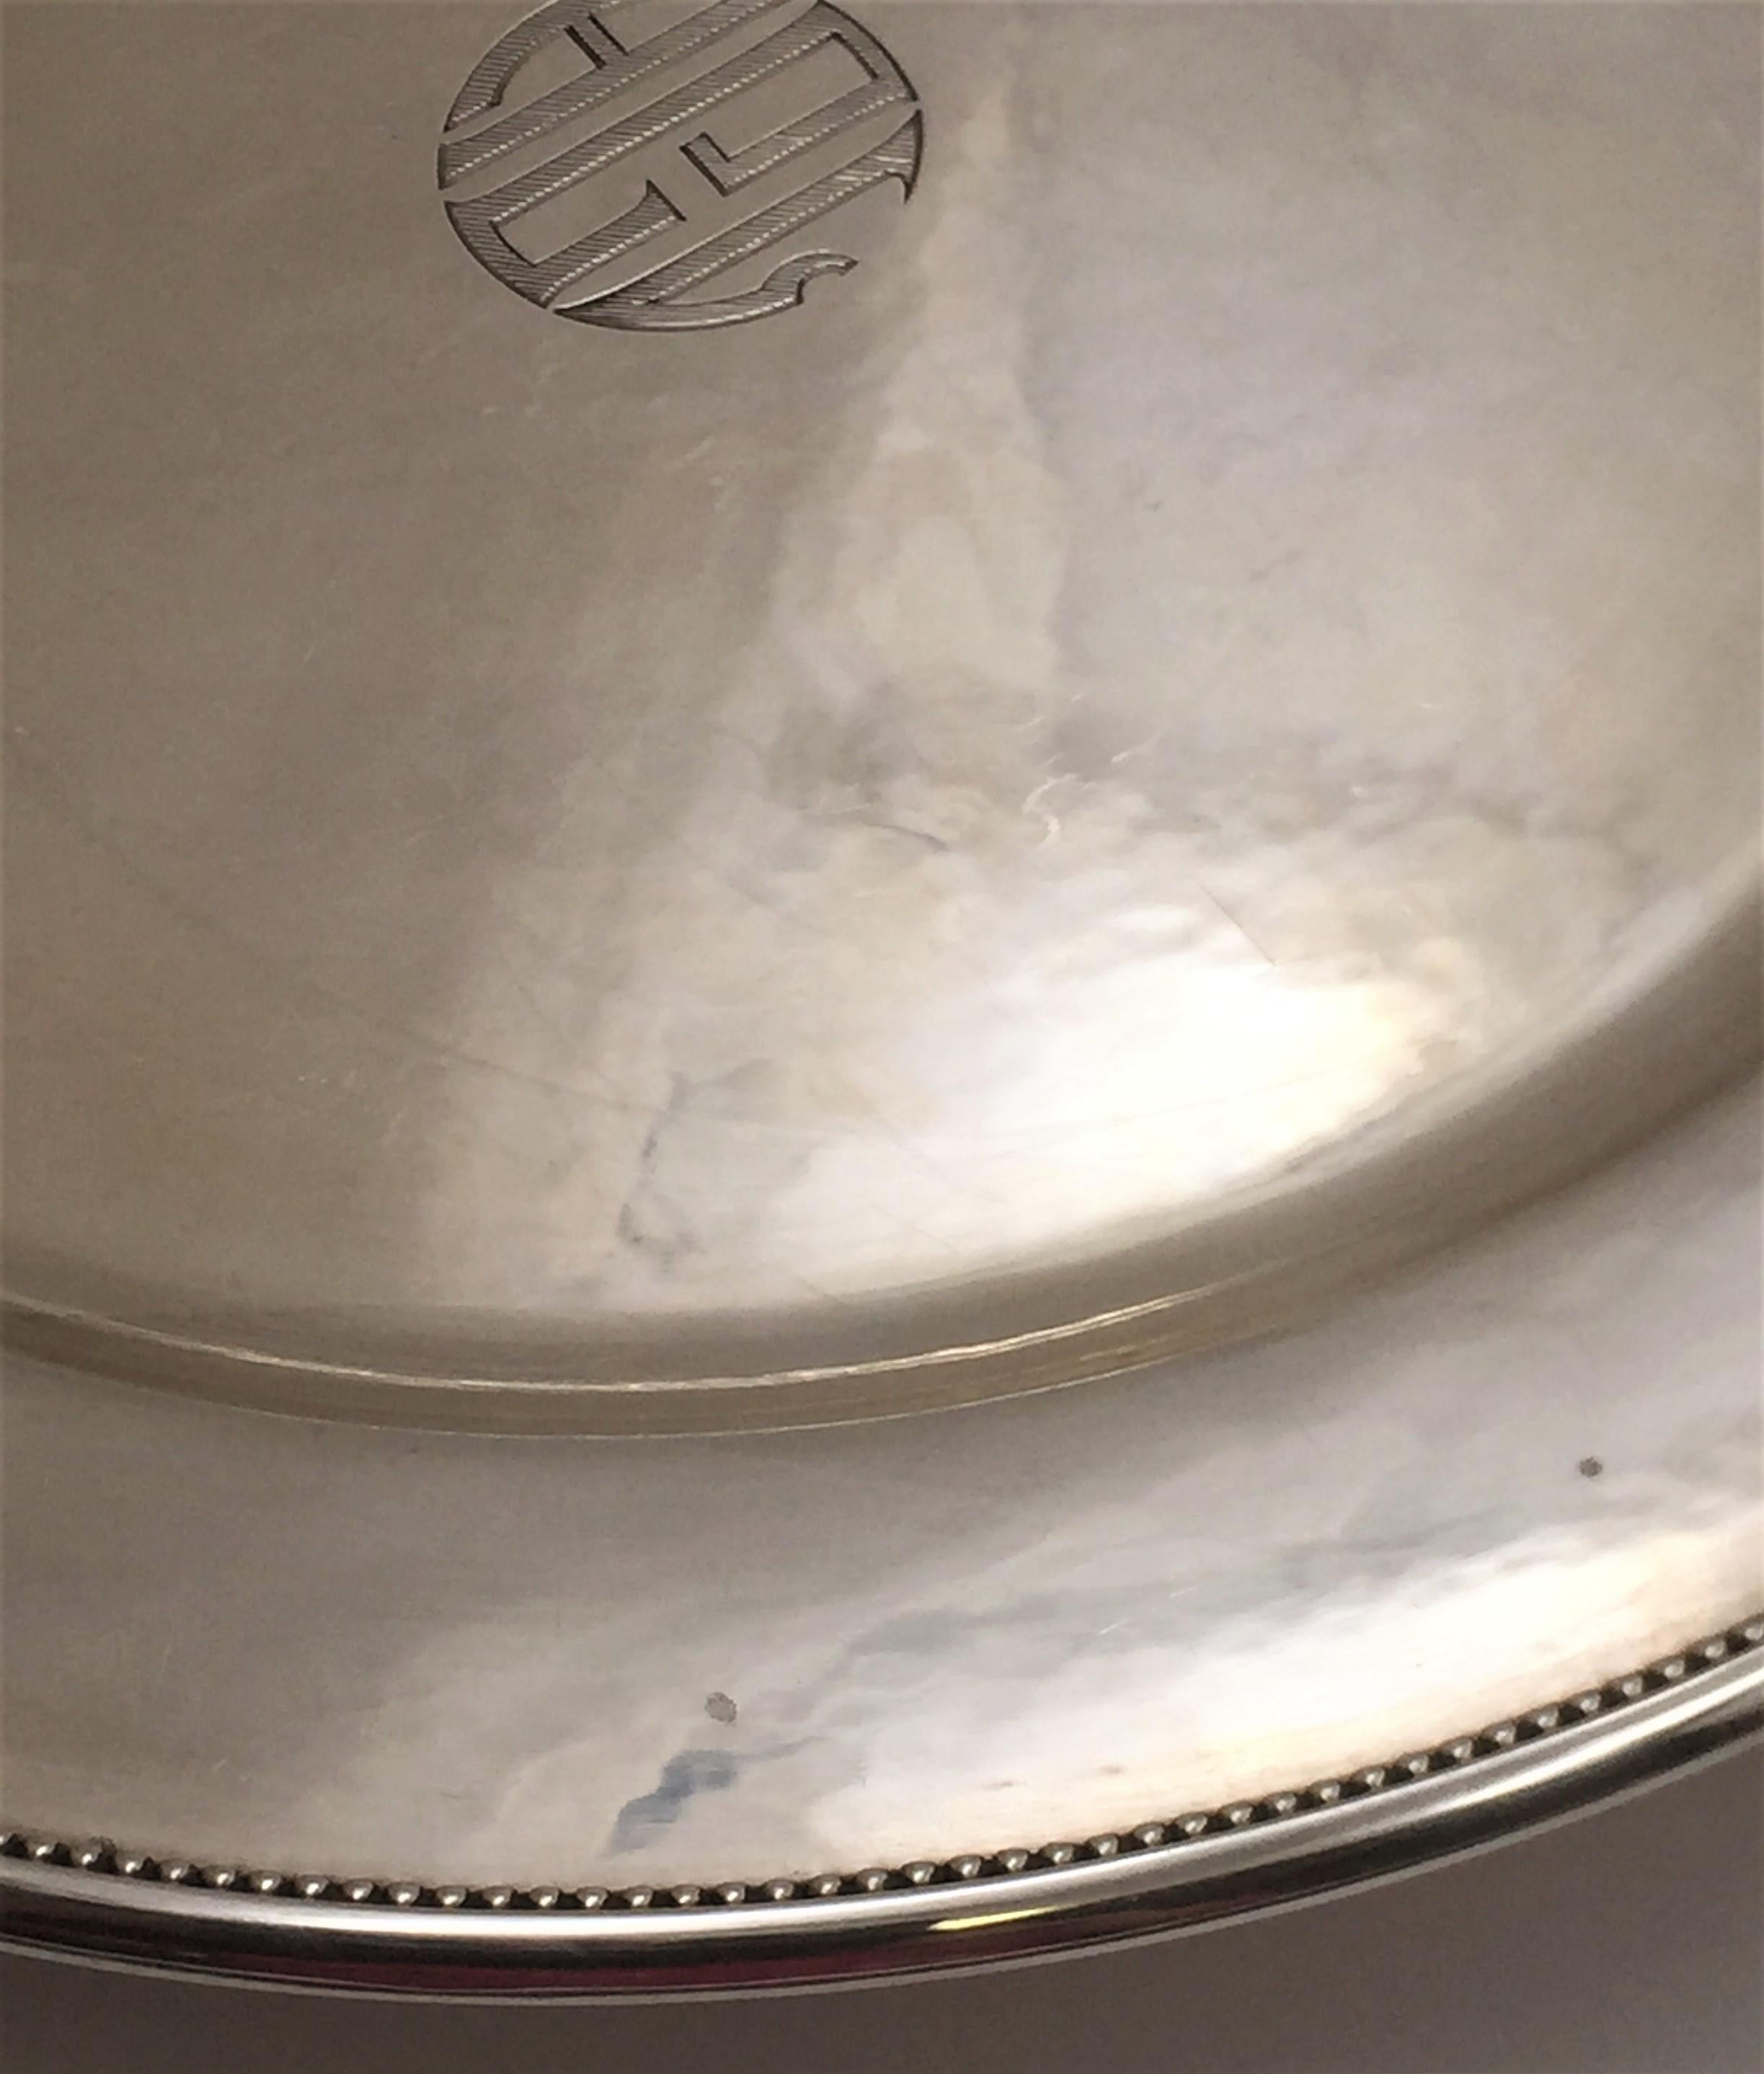 Ensemble de 12 assiettes à dîner/chariots en argent sterling de Georg Jensen (diamètre 11in) avec une surface martelée à la main et un motif perlé le long du bord, portant les poinçons et les monogrammes tels qu'illustrés. Le poids total est de 254